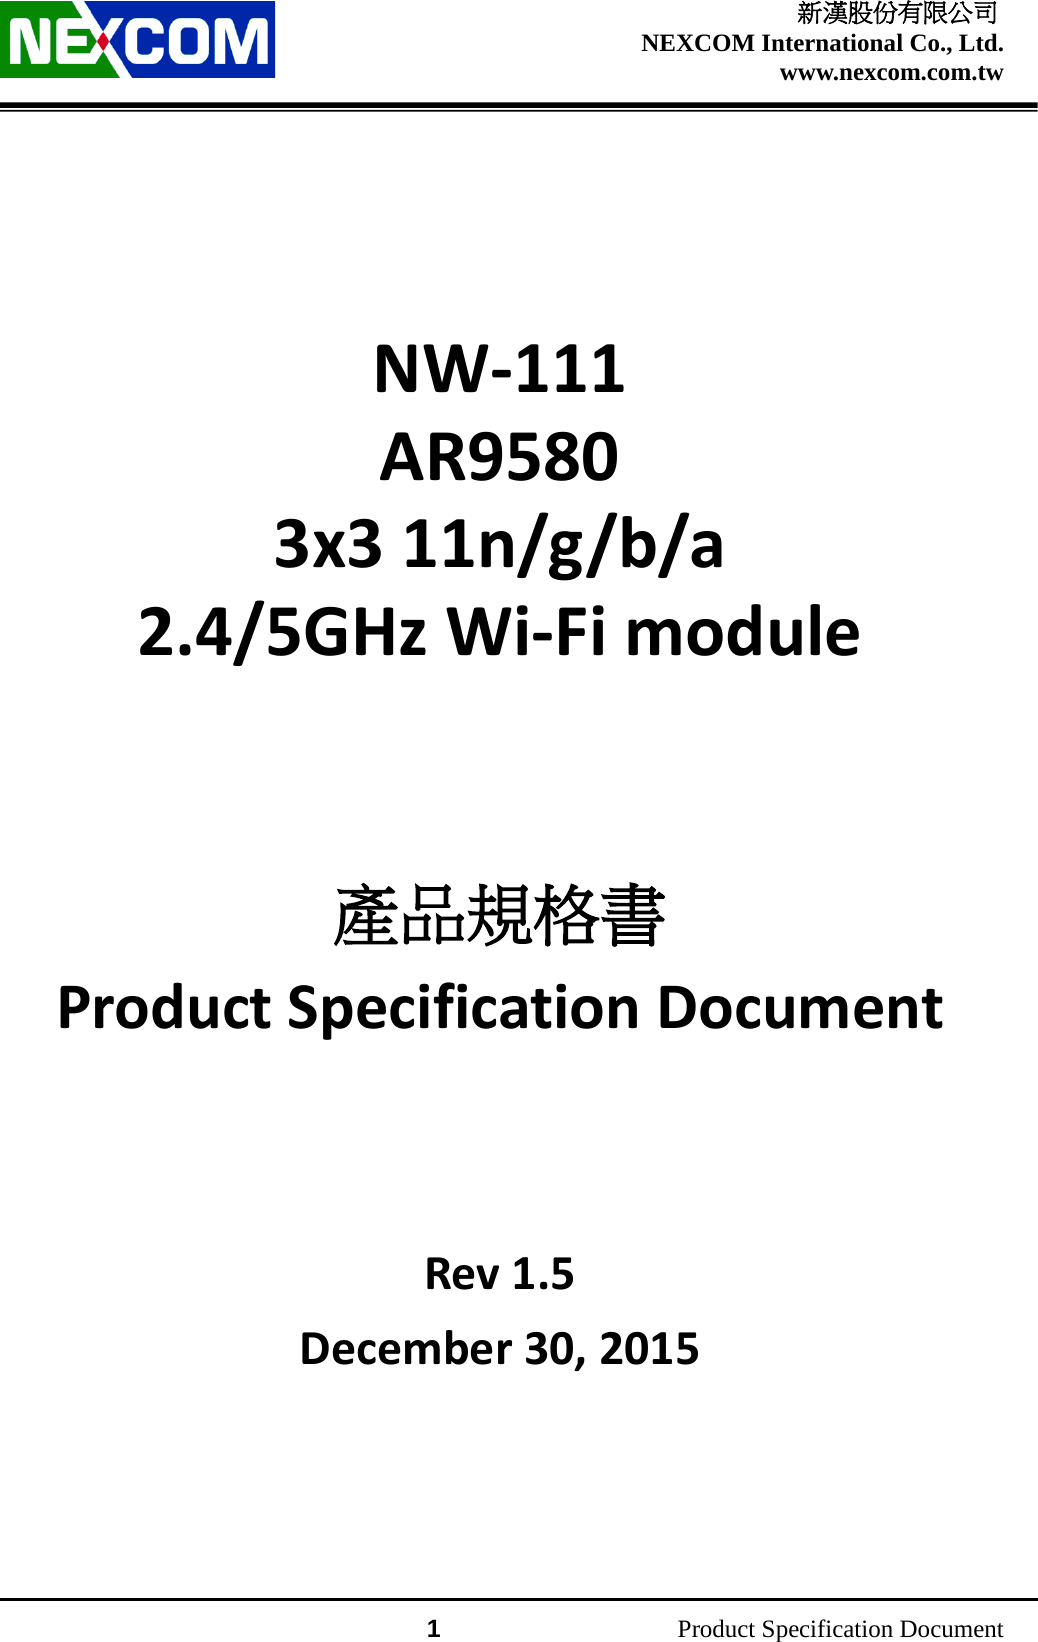    新漢股份有限公司 NEXCOM International Co., Ltd. www.nexcom.com.tw                 1          Product Specification Document    NW-111 AR9580 3x3 11n/g/b/a 2.4/5GHz Wi-Fi module     產品規格書 Product Specification Document      Rev 1.5 December 30, 2015     